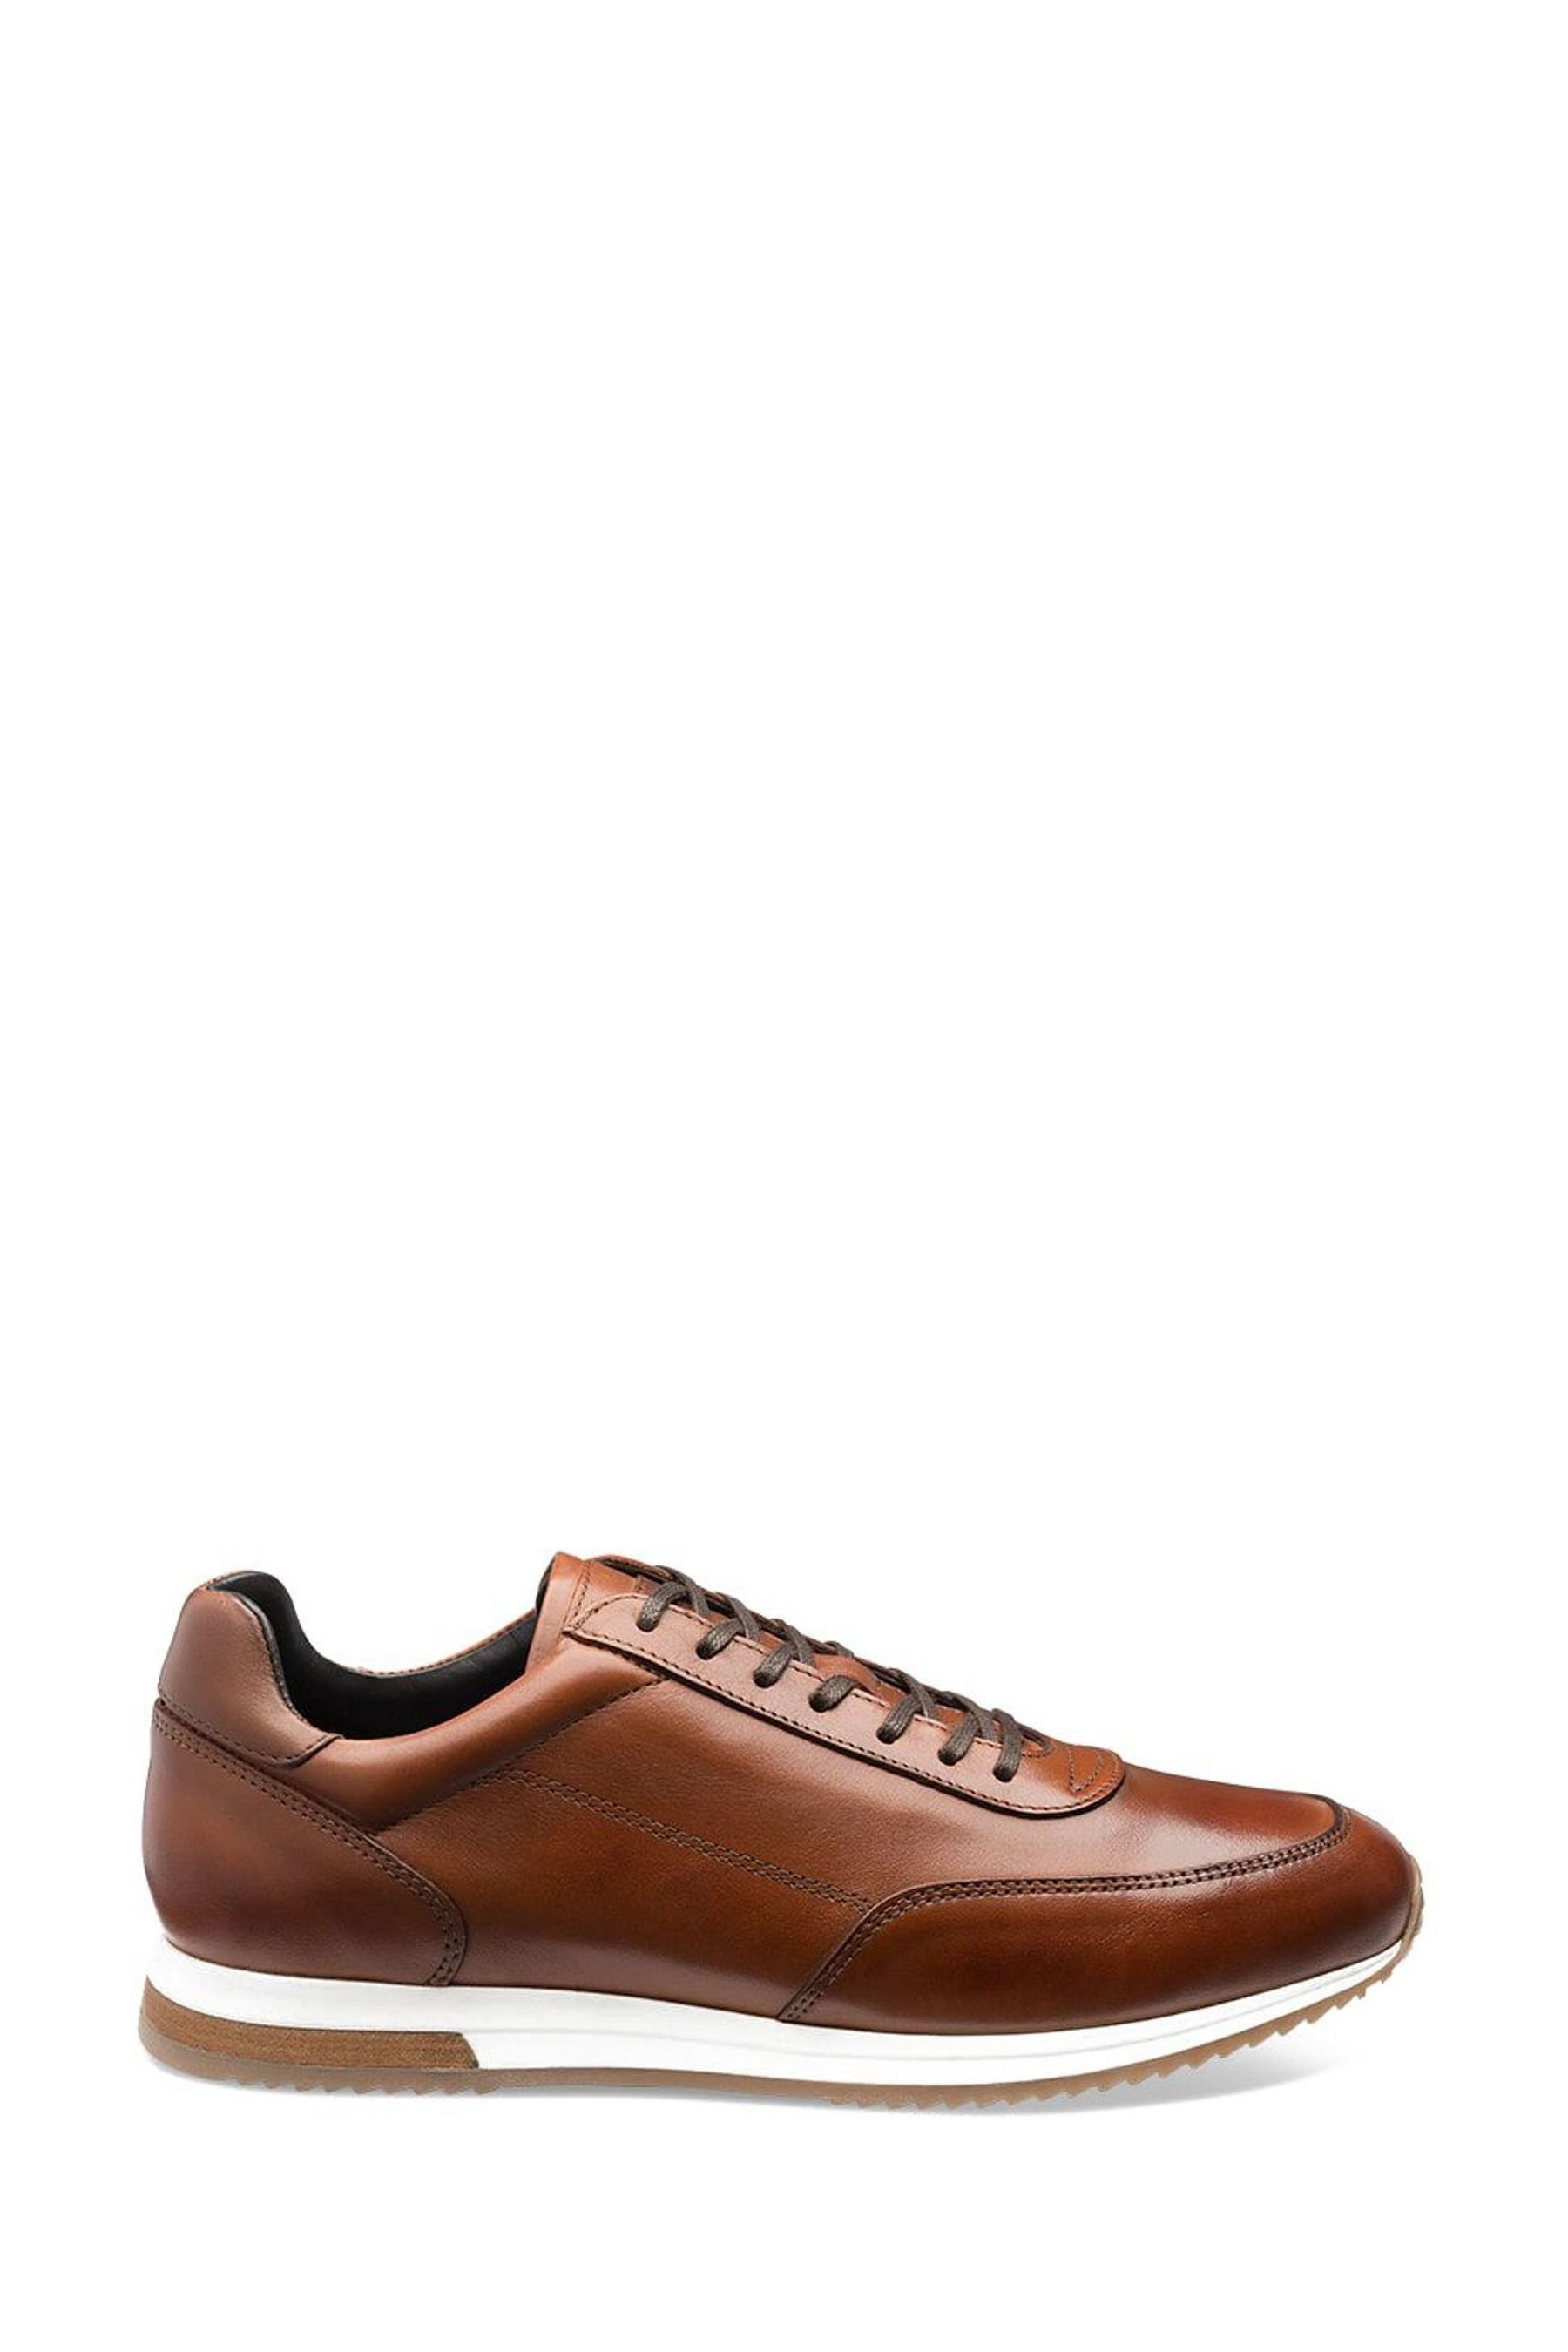 Кожаные спортивные туфли Bannister Loake, коричневый